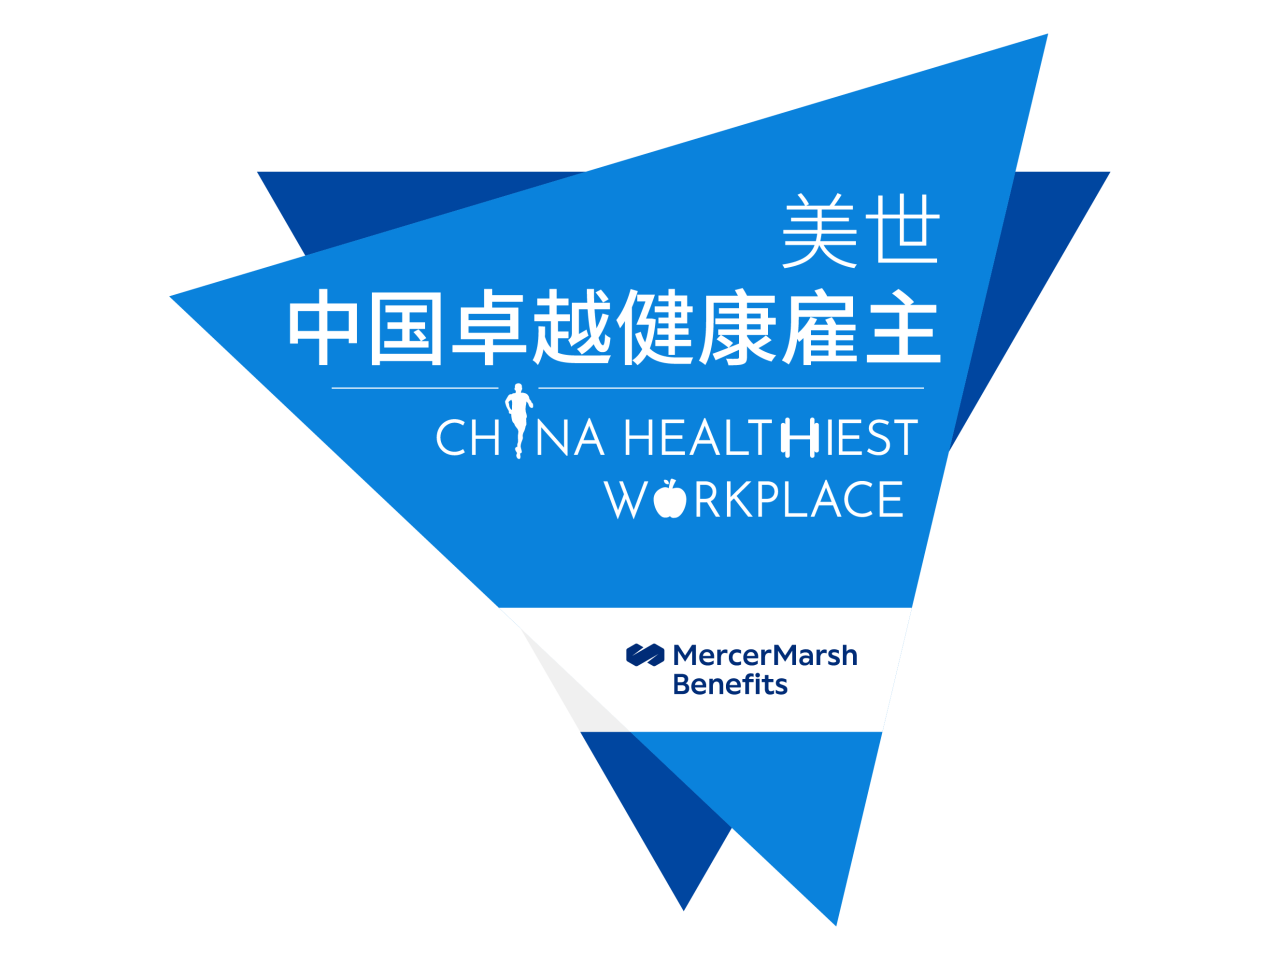 "China Healthiest Workplace, MercerMarsh Benefits" logos